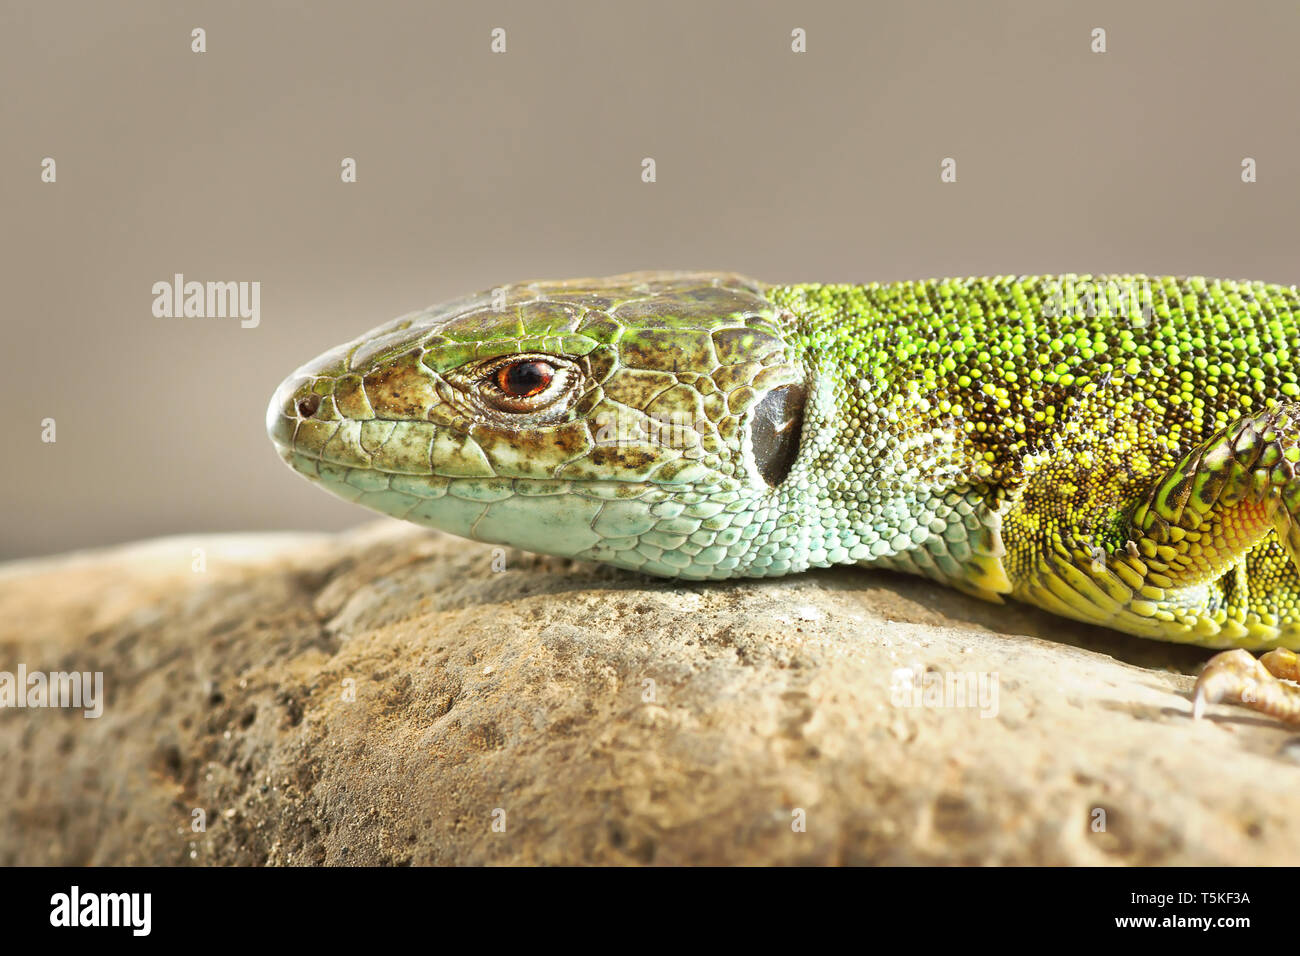 Immagine dettagliata di Lacerta viridis, il comune lucertola verde Foto Stock